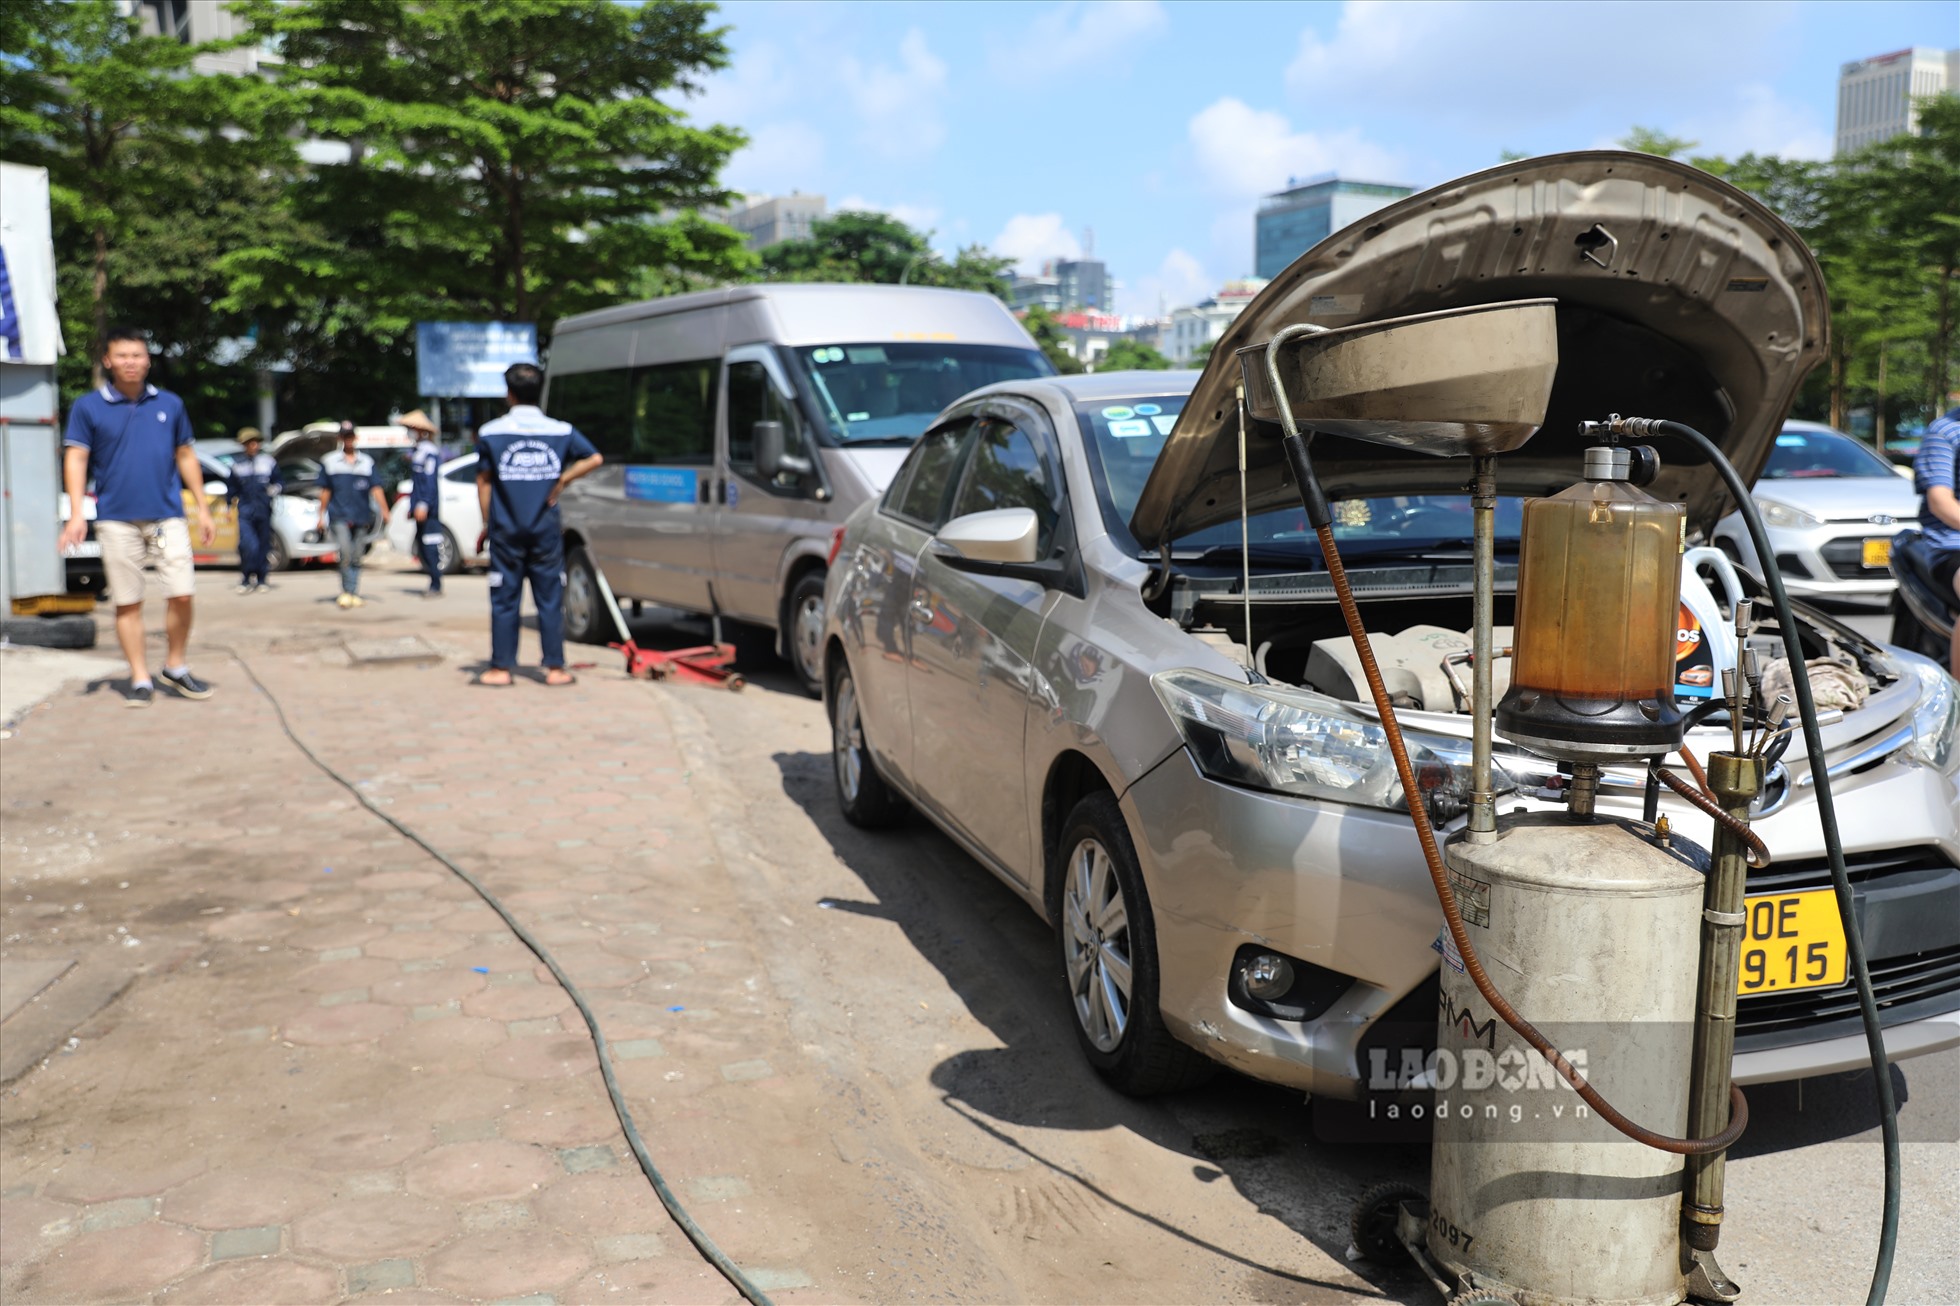 Nhiều khách hàng đưa ôtô đến garage để “tân trang” lại xe để chuẩn bị cho chuyến đi trong dịp nghỉ lễ sắp tới.